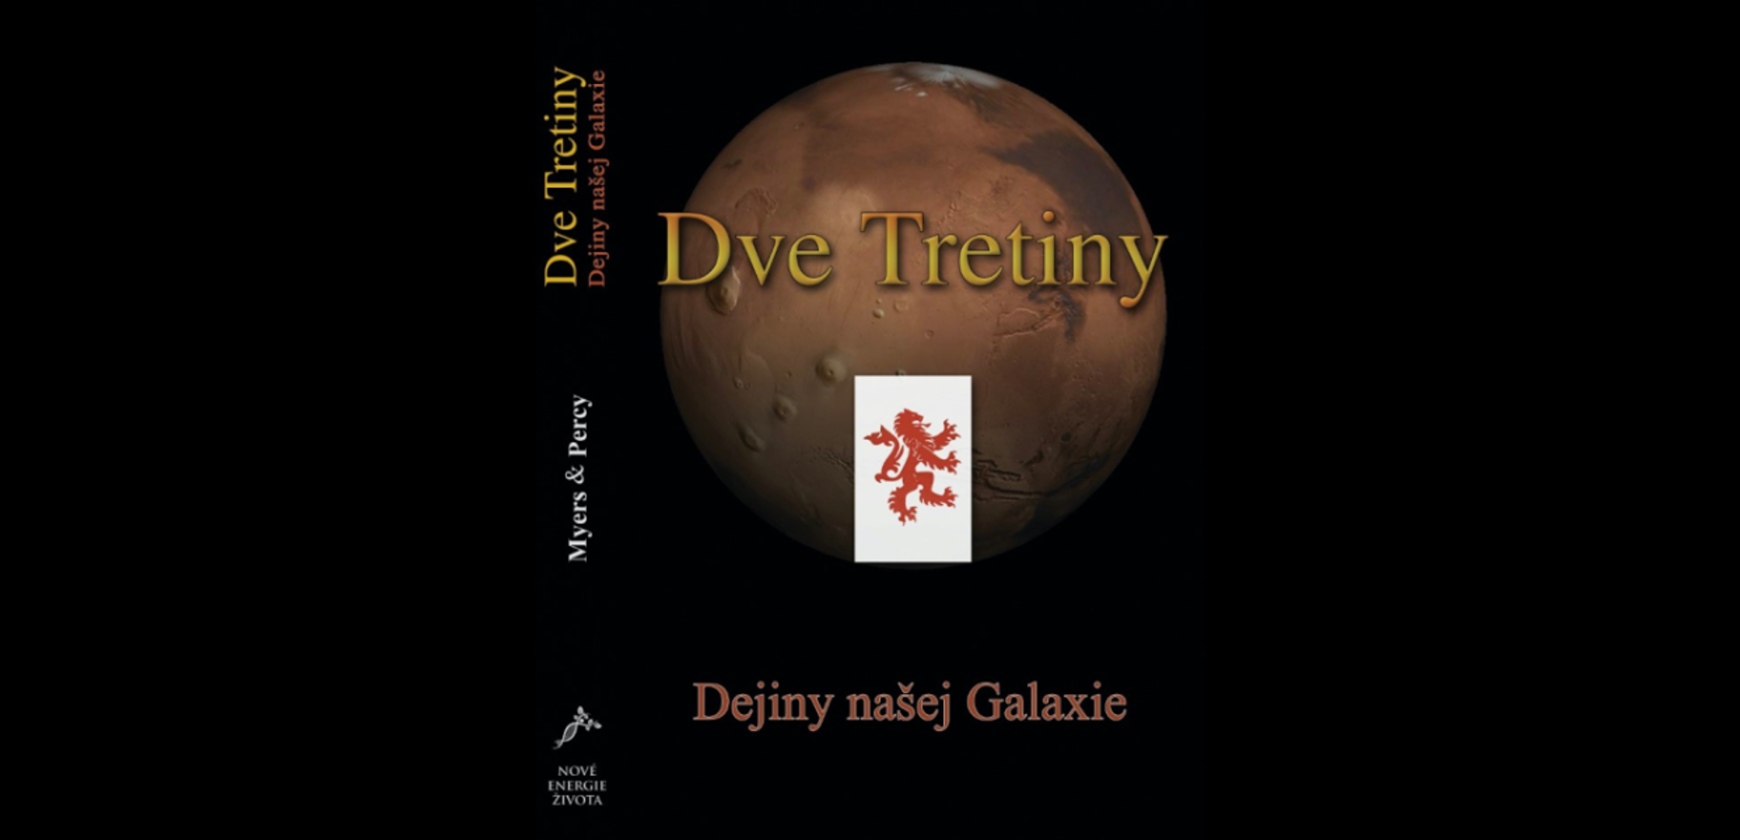 dve-tretiny-dejiny-nasej-galaxie-myers-percy-.jpg